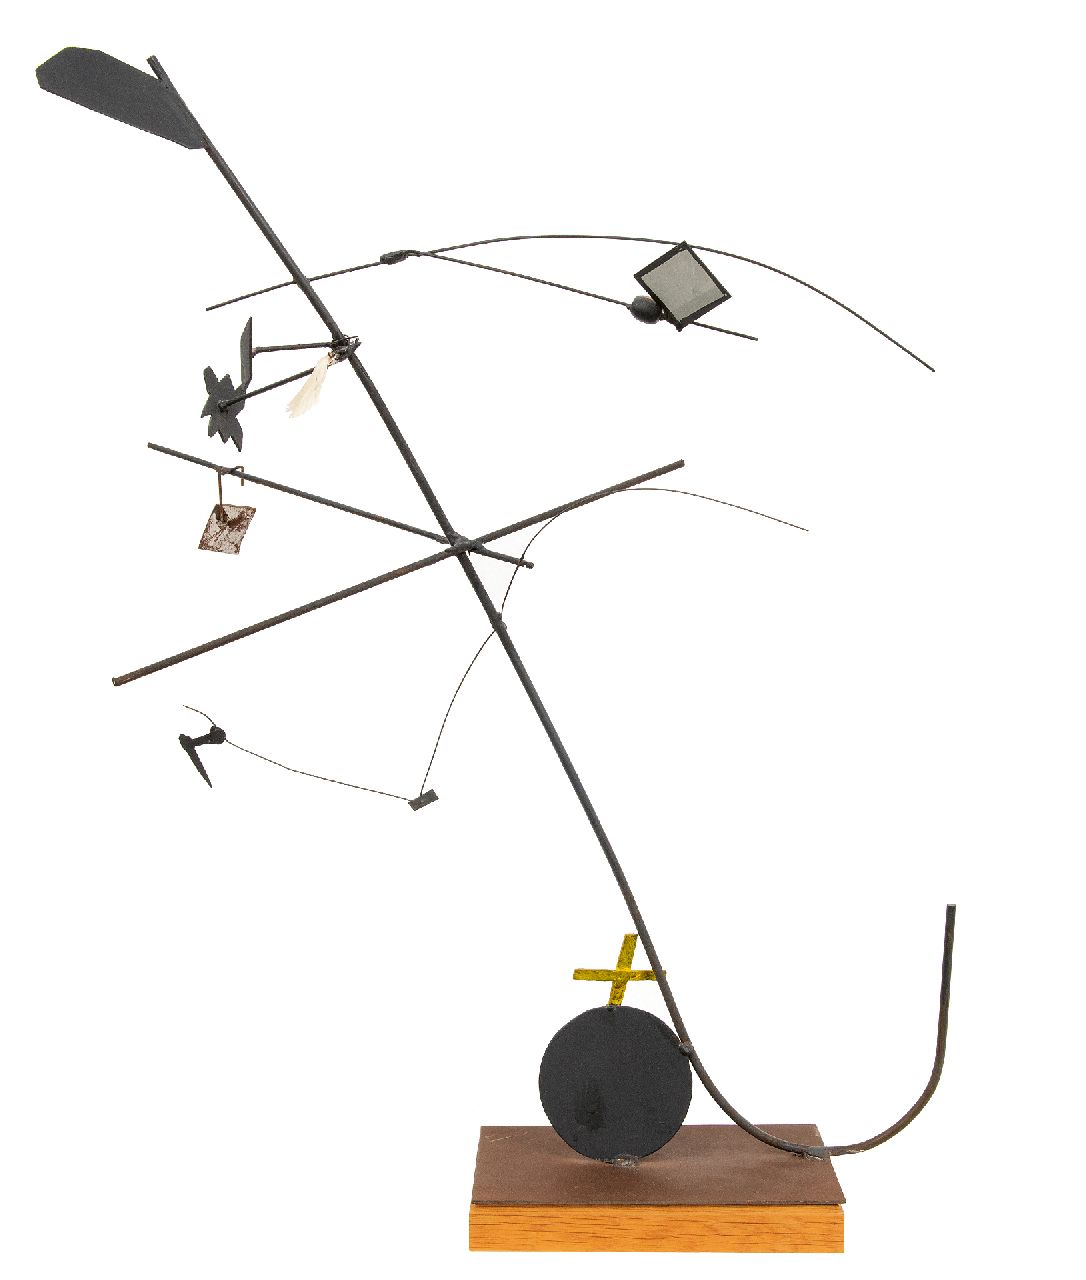 Vries A. de | Auke de Vries | Skulpturen und Objekte zum Verkauf angeboten | Modell für eine monumentale Skulptur in Zuiderpolder, Haarlem, painted metal, wood, spring 70,2 cm, zu datieren um 1994